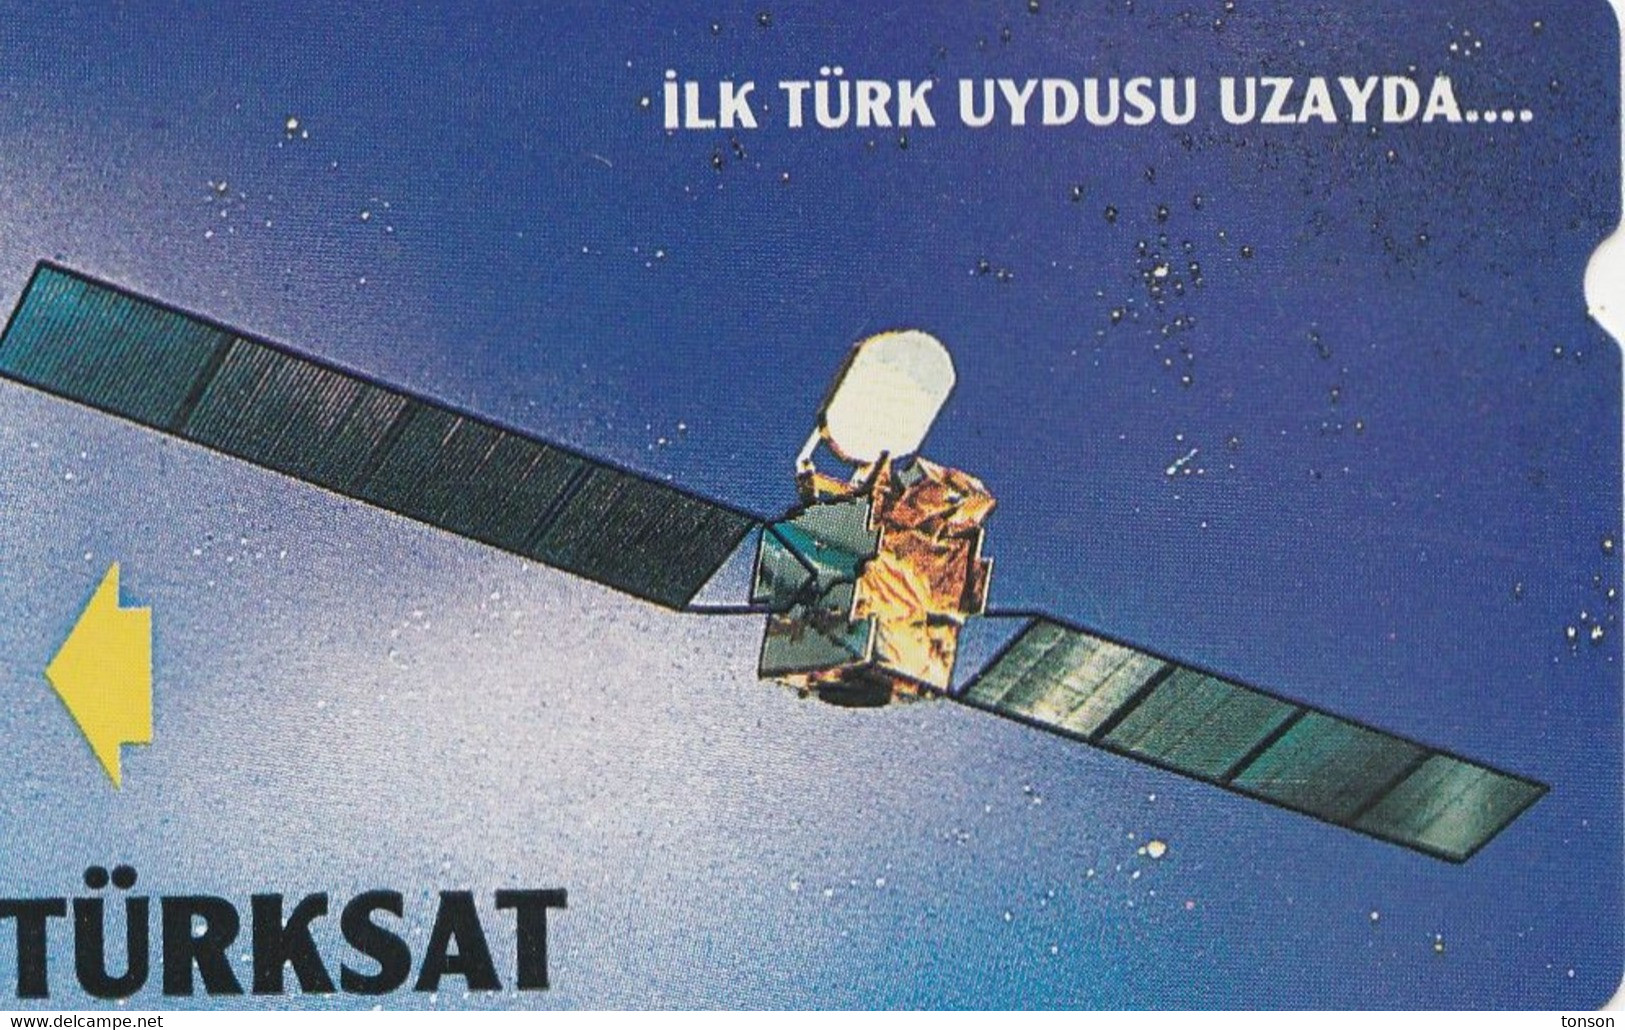 Turkey, TR-PTT-ADV-0003, 100 Units, Turksat-First Turkish Communication Satellite, 2 Scans. - Türkei